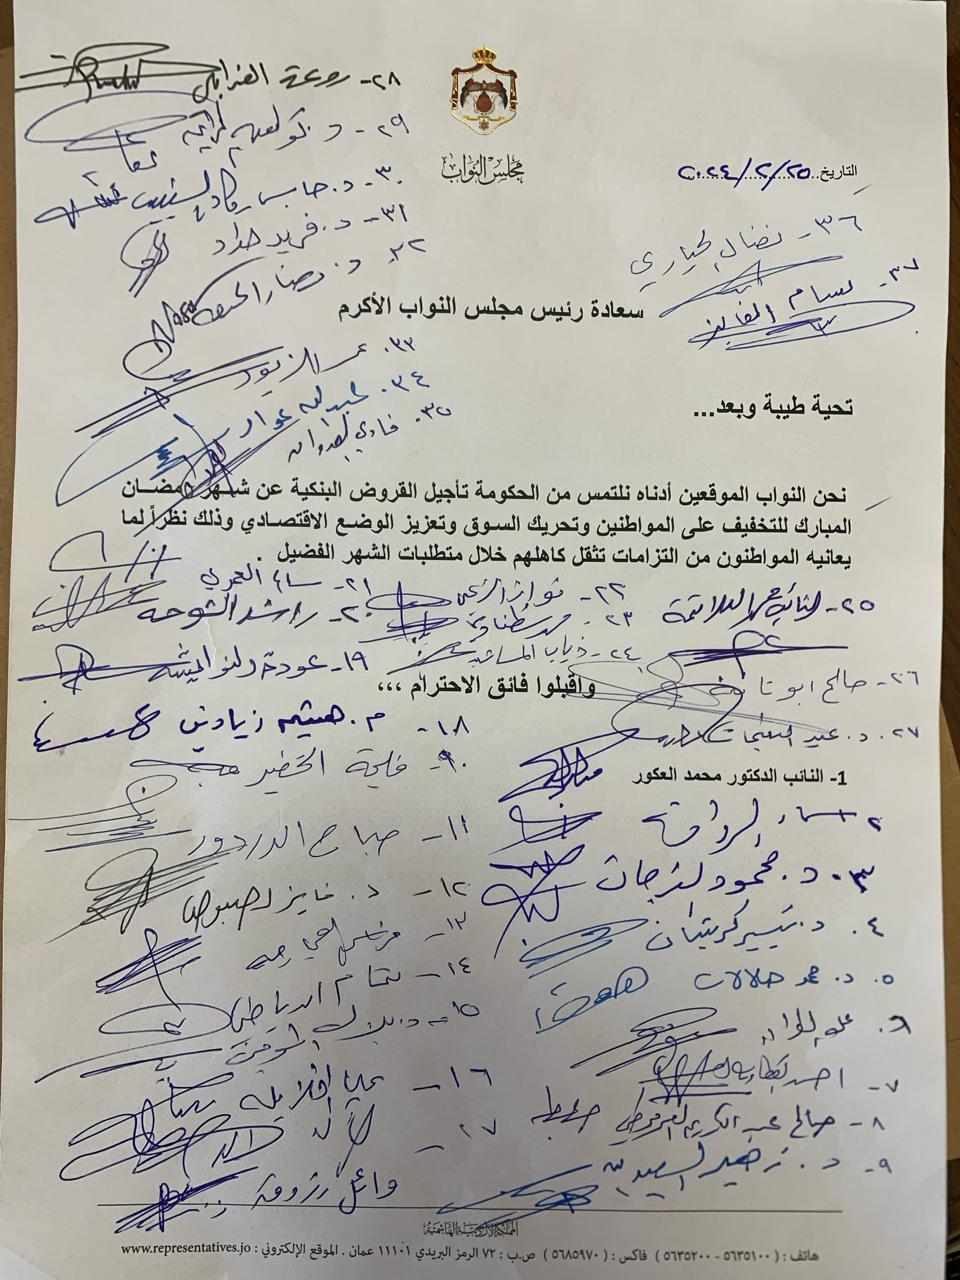   عشرات النواب يطالبون الحكومة بتأجيل القروض البنكية في شهر رمضان - اسماء